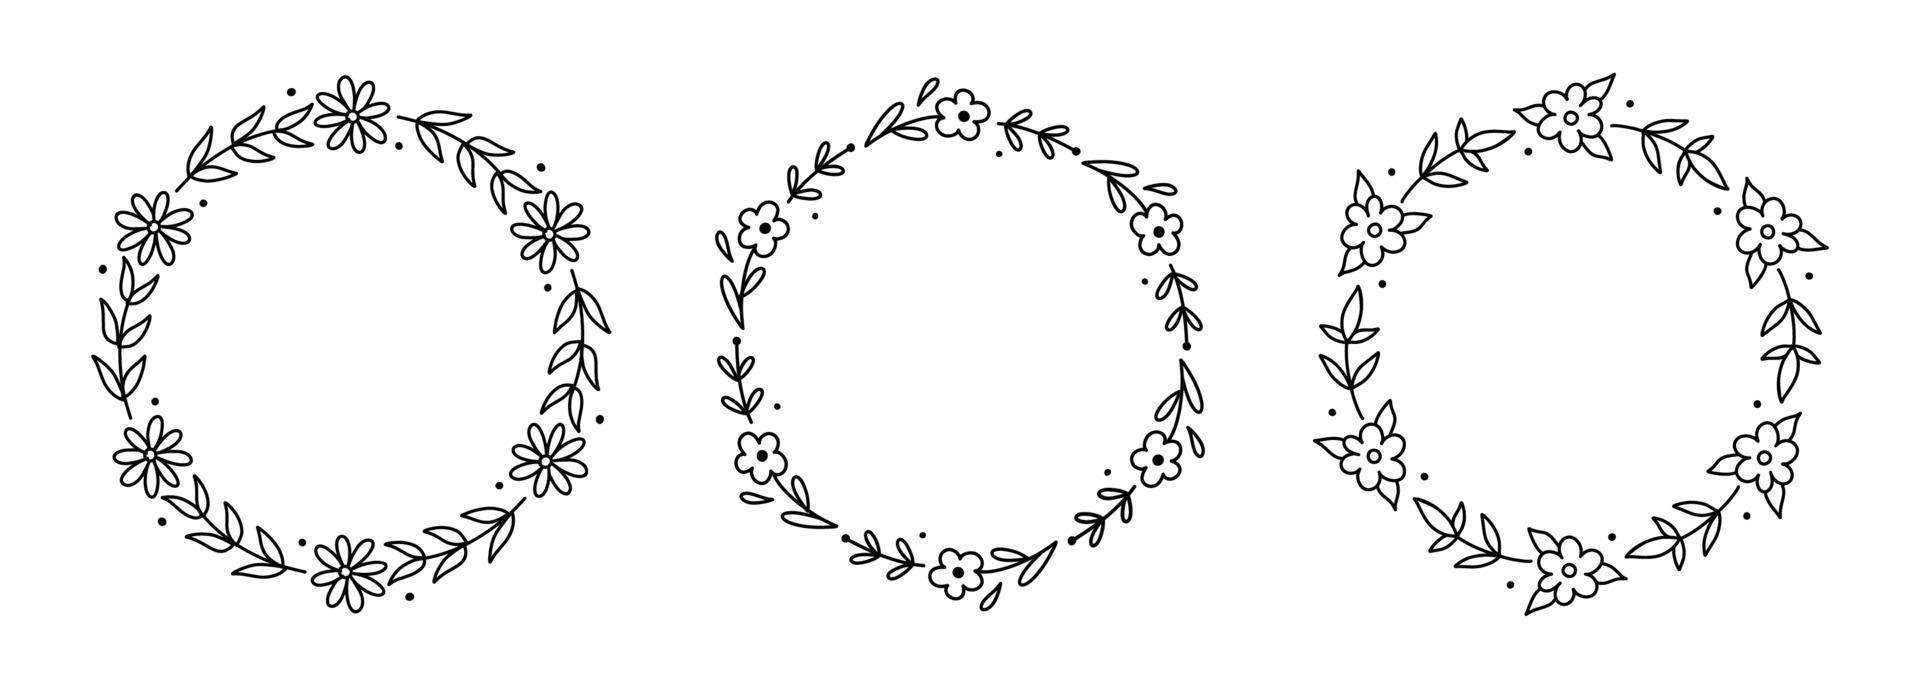 ensemble de couronnes florales isolé sur fond blanc. cadres ronds avec fleurs et feuilles. illustration vectorielle dessinée à la main dans un style doodle. parfait pour les cartes, invitations, décorations, logo. vecteur